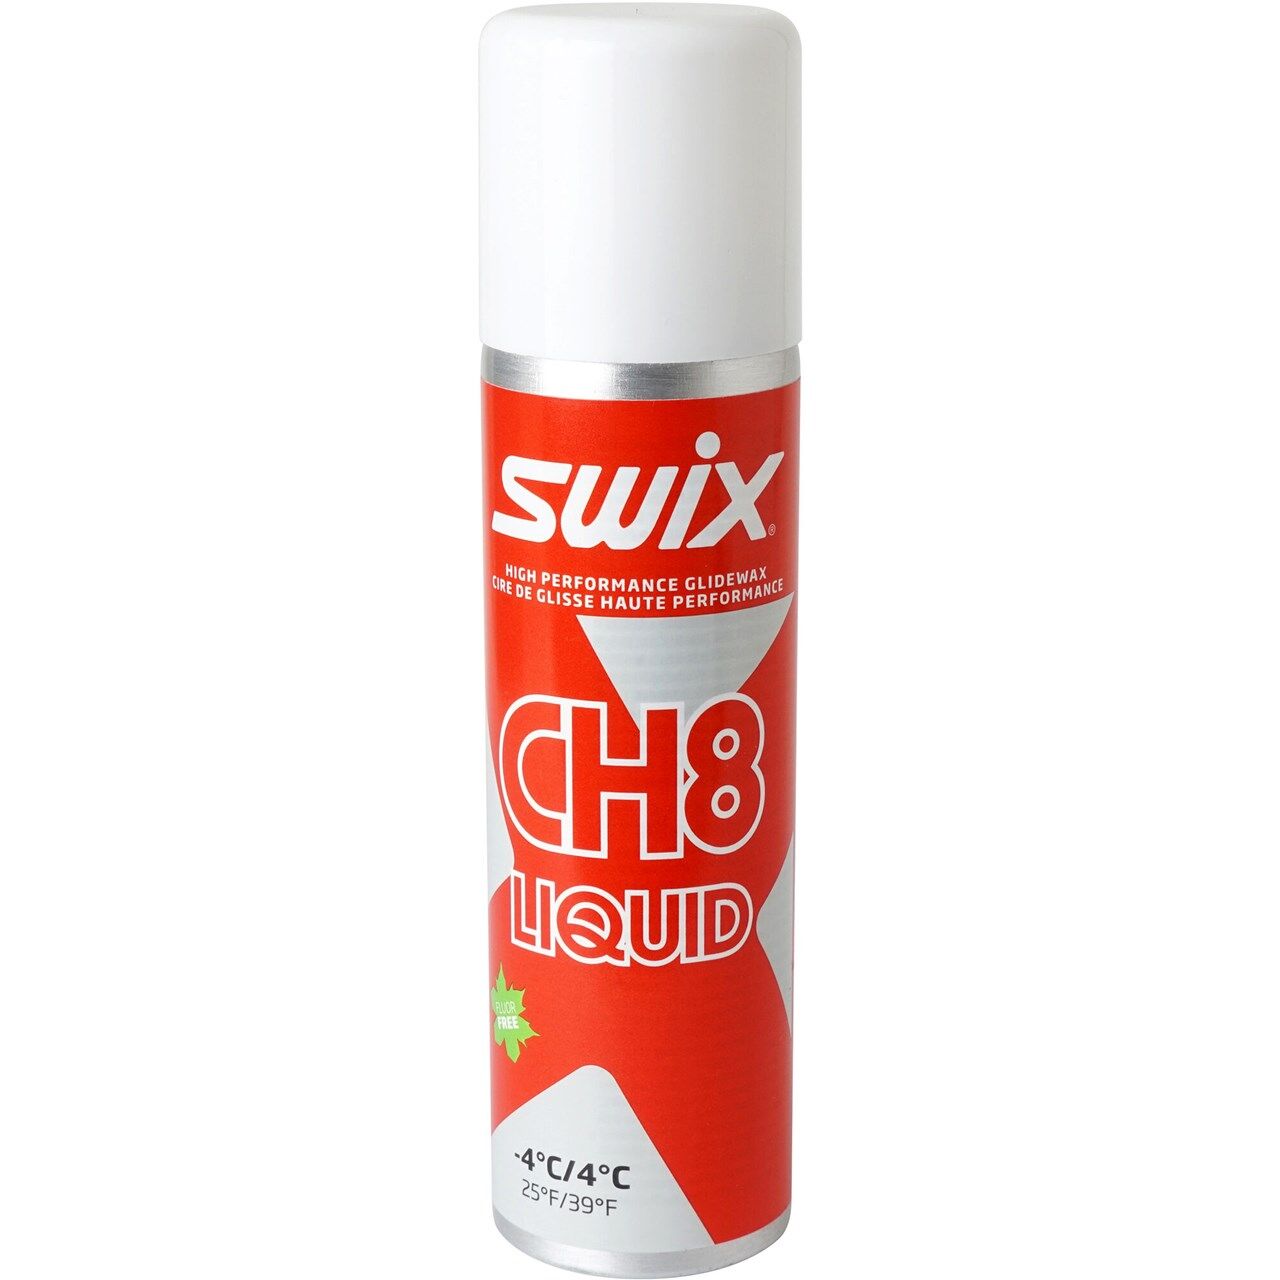 Swix CH08X Liquid -4C/+4C (125ml) - Skiwax